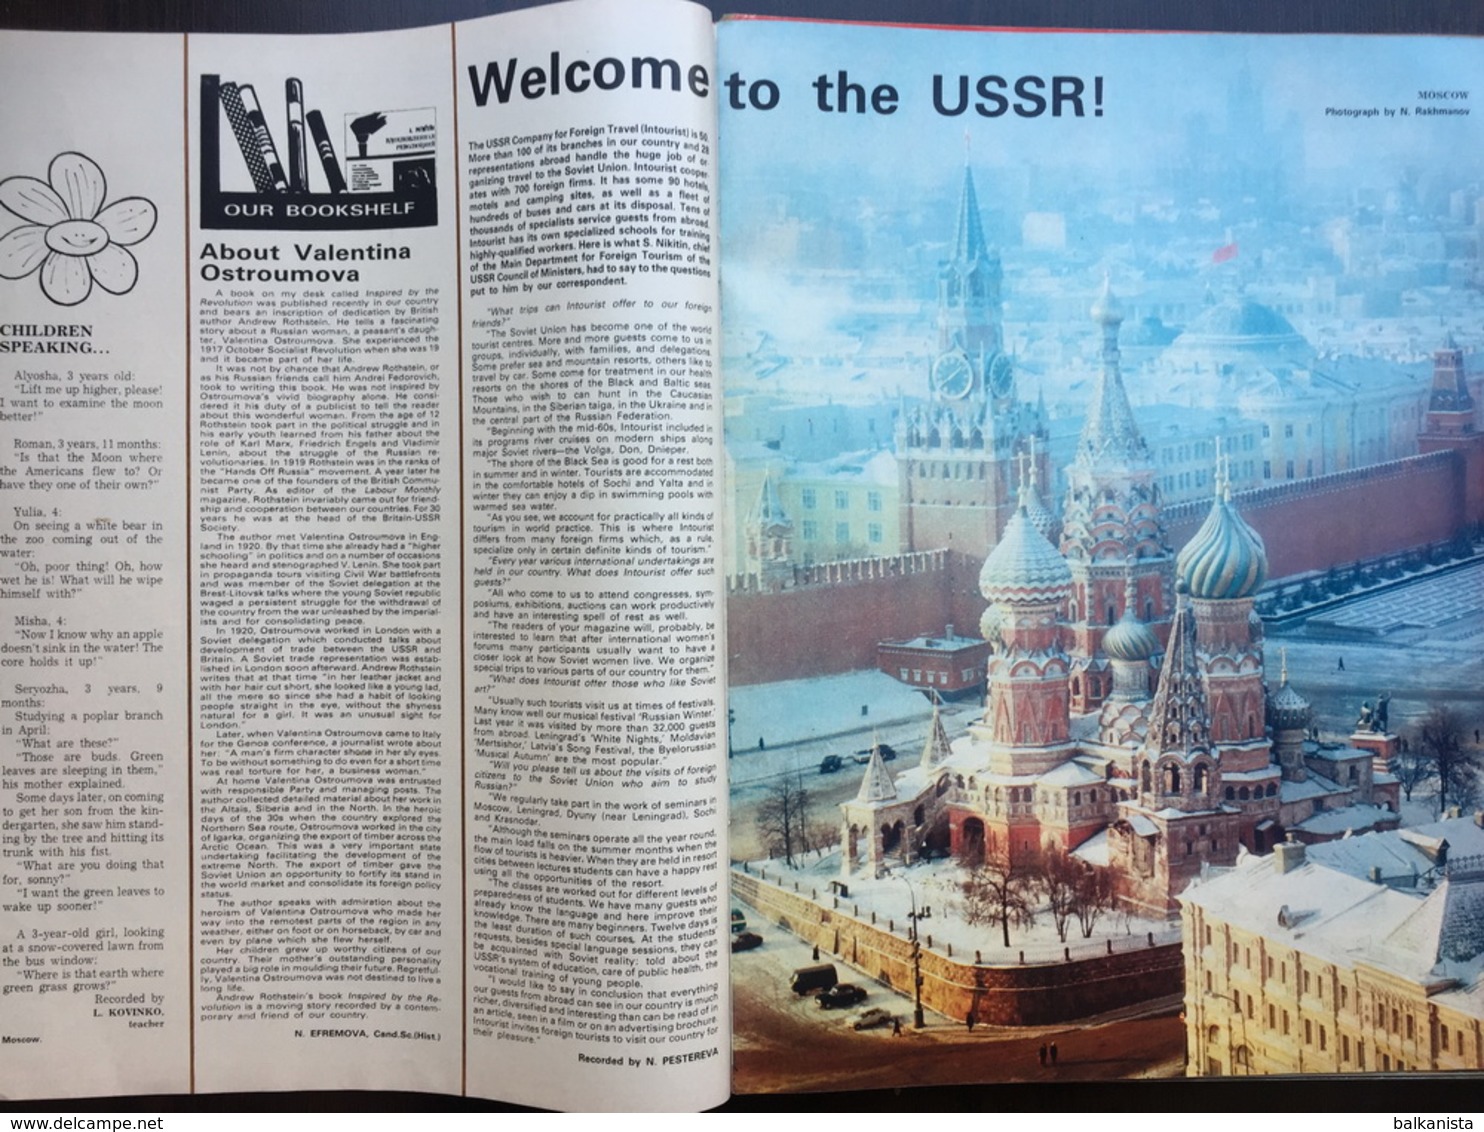 USSR - Soviet Union 1980 No:1 (358) - Storia